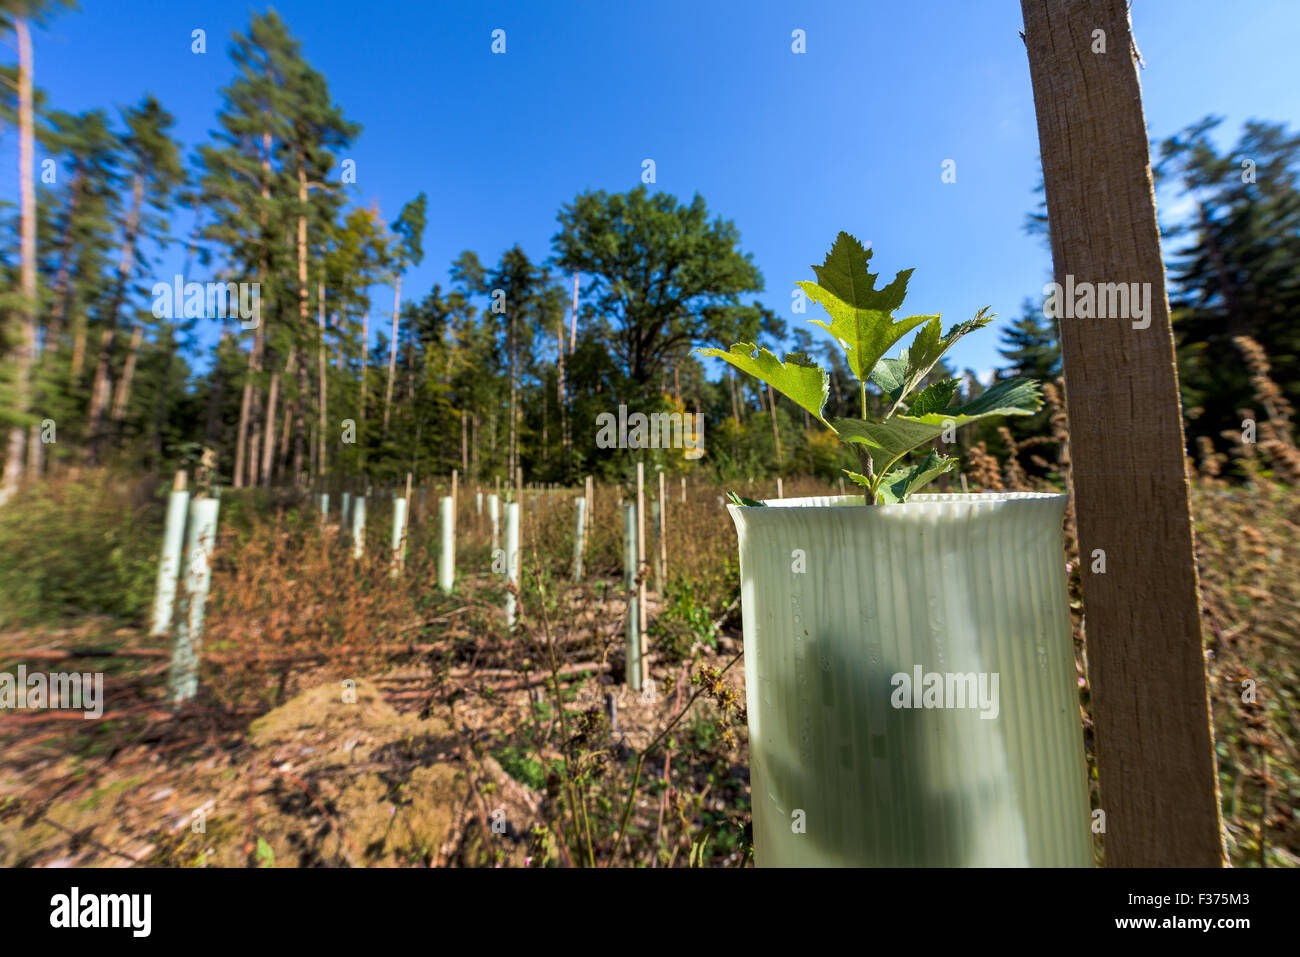 Reforestación pequeños plantones retoño del tubo de protección forestal de árboles silvestres mordida, renovar las plántulas protección moretón, coníferas. Foto de stock